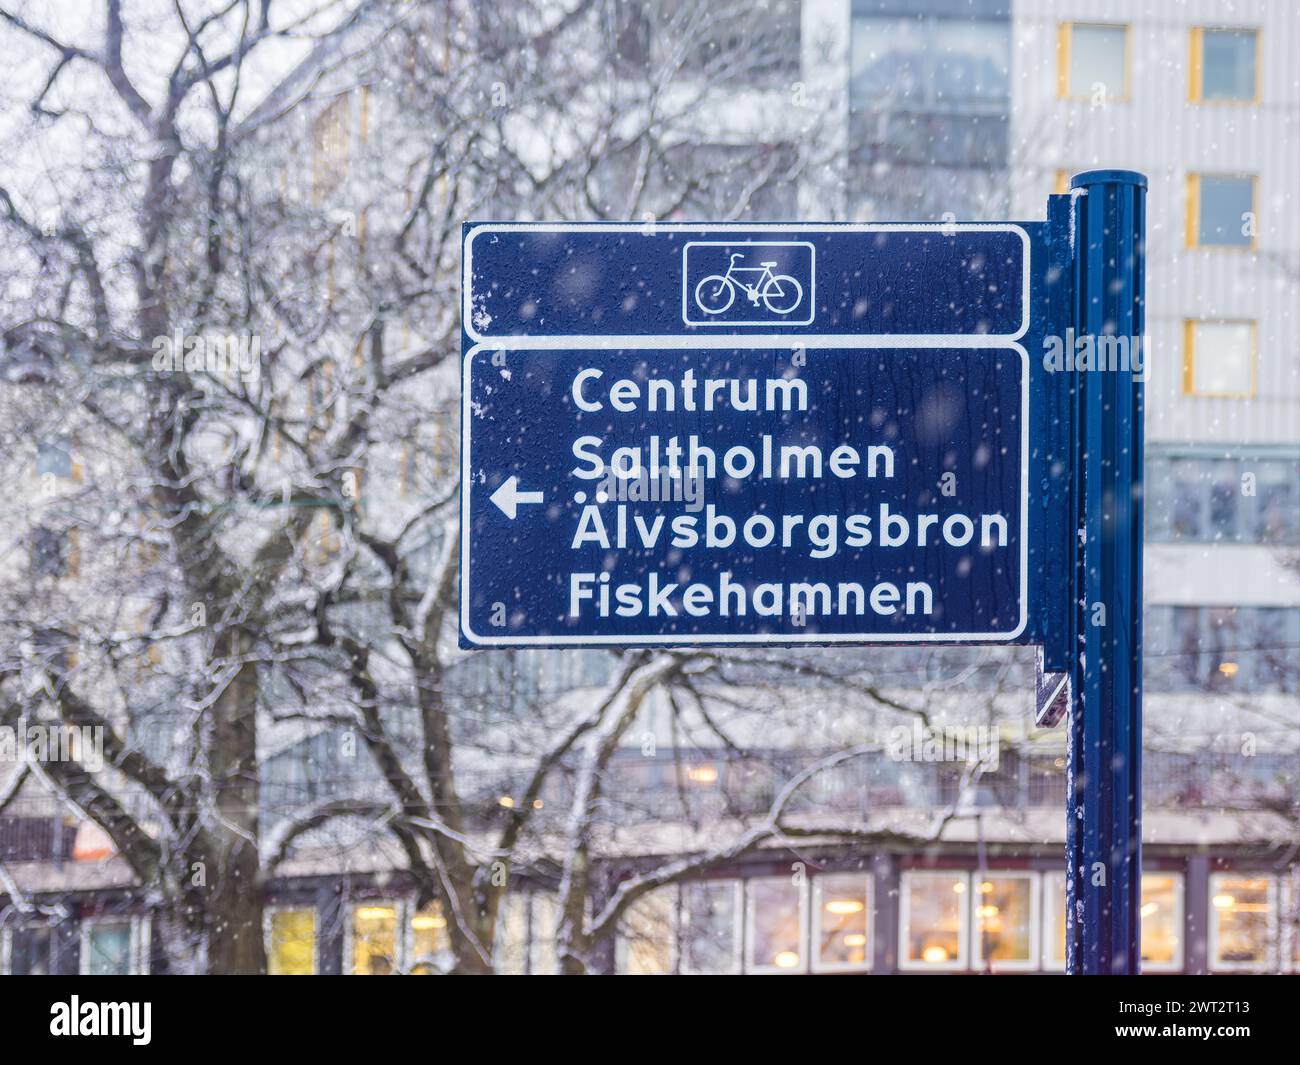 Un panneau de signalisation cycliste se tient résistant au milieu d'une douce chute de neige à Gothenburg, dirigeant les cyclistes vers Centrum, Salltholmen, Älvsborgsbron et Fiskeham Banque D'Images